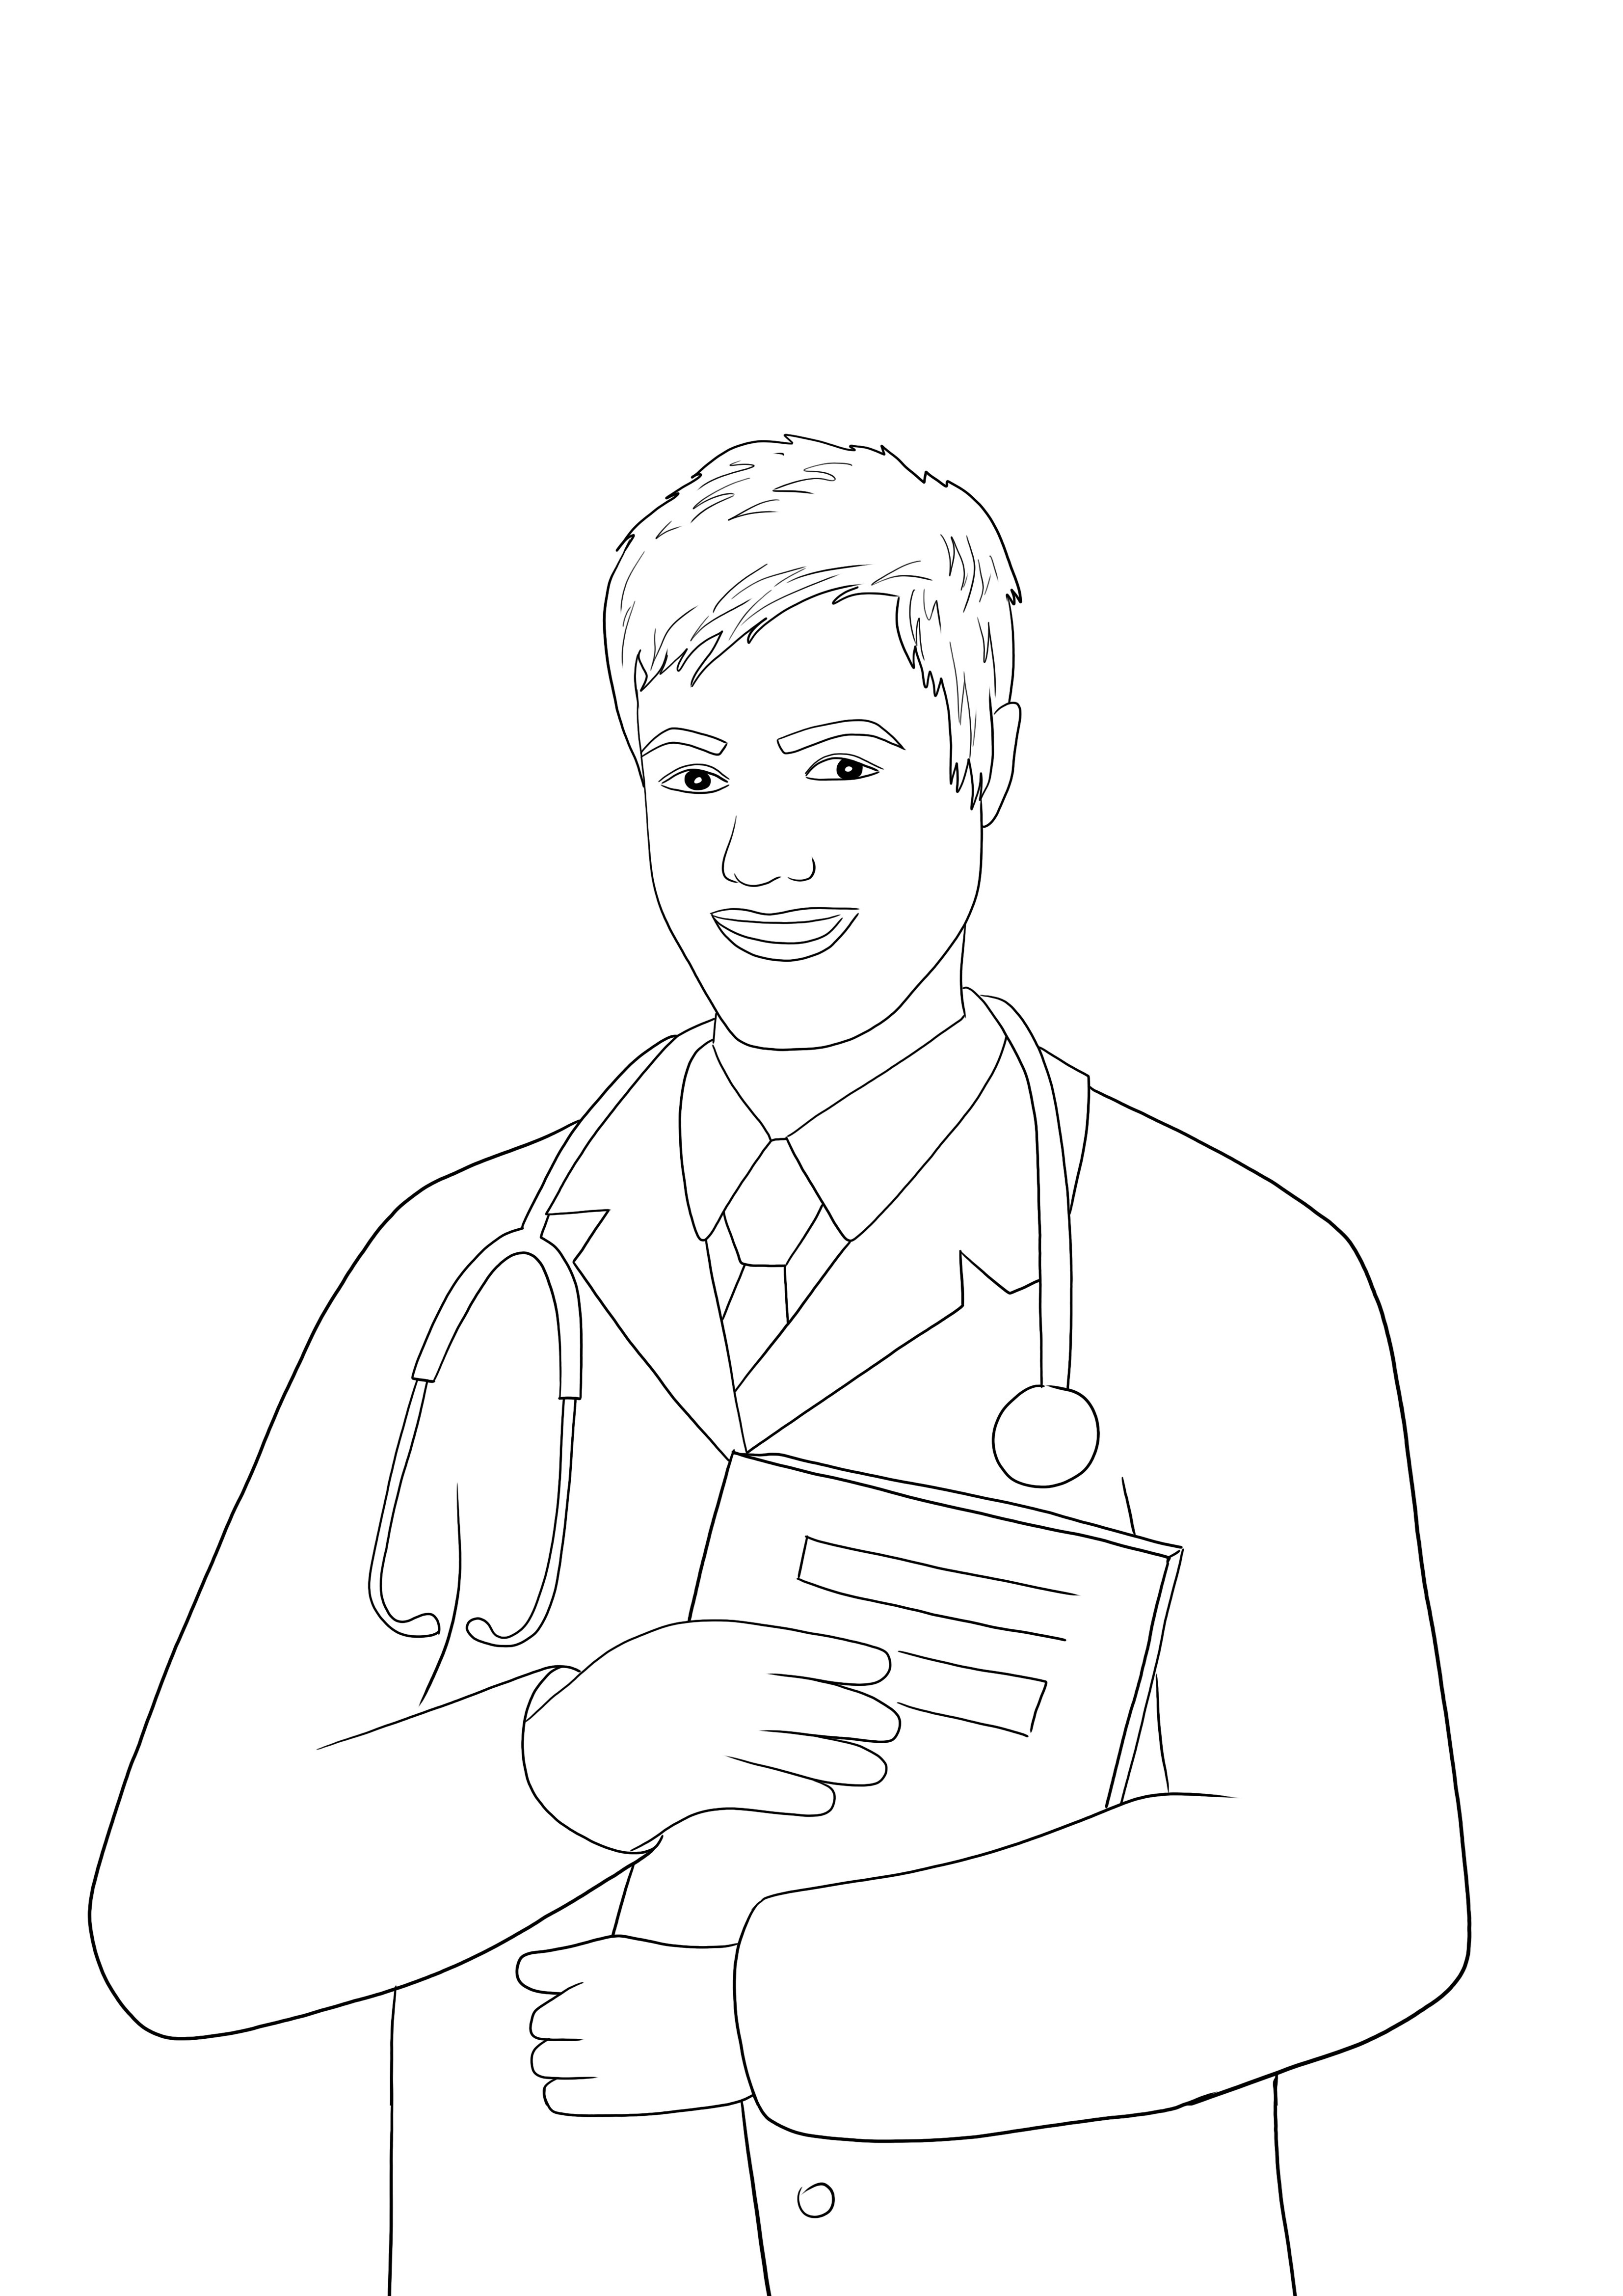 Une image à colorier imprimable gratuite d'un homme médecin pour enseigner les professions